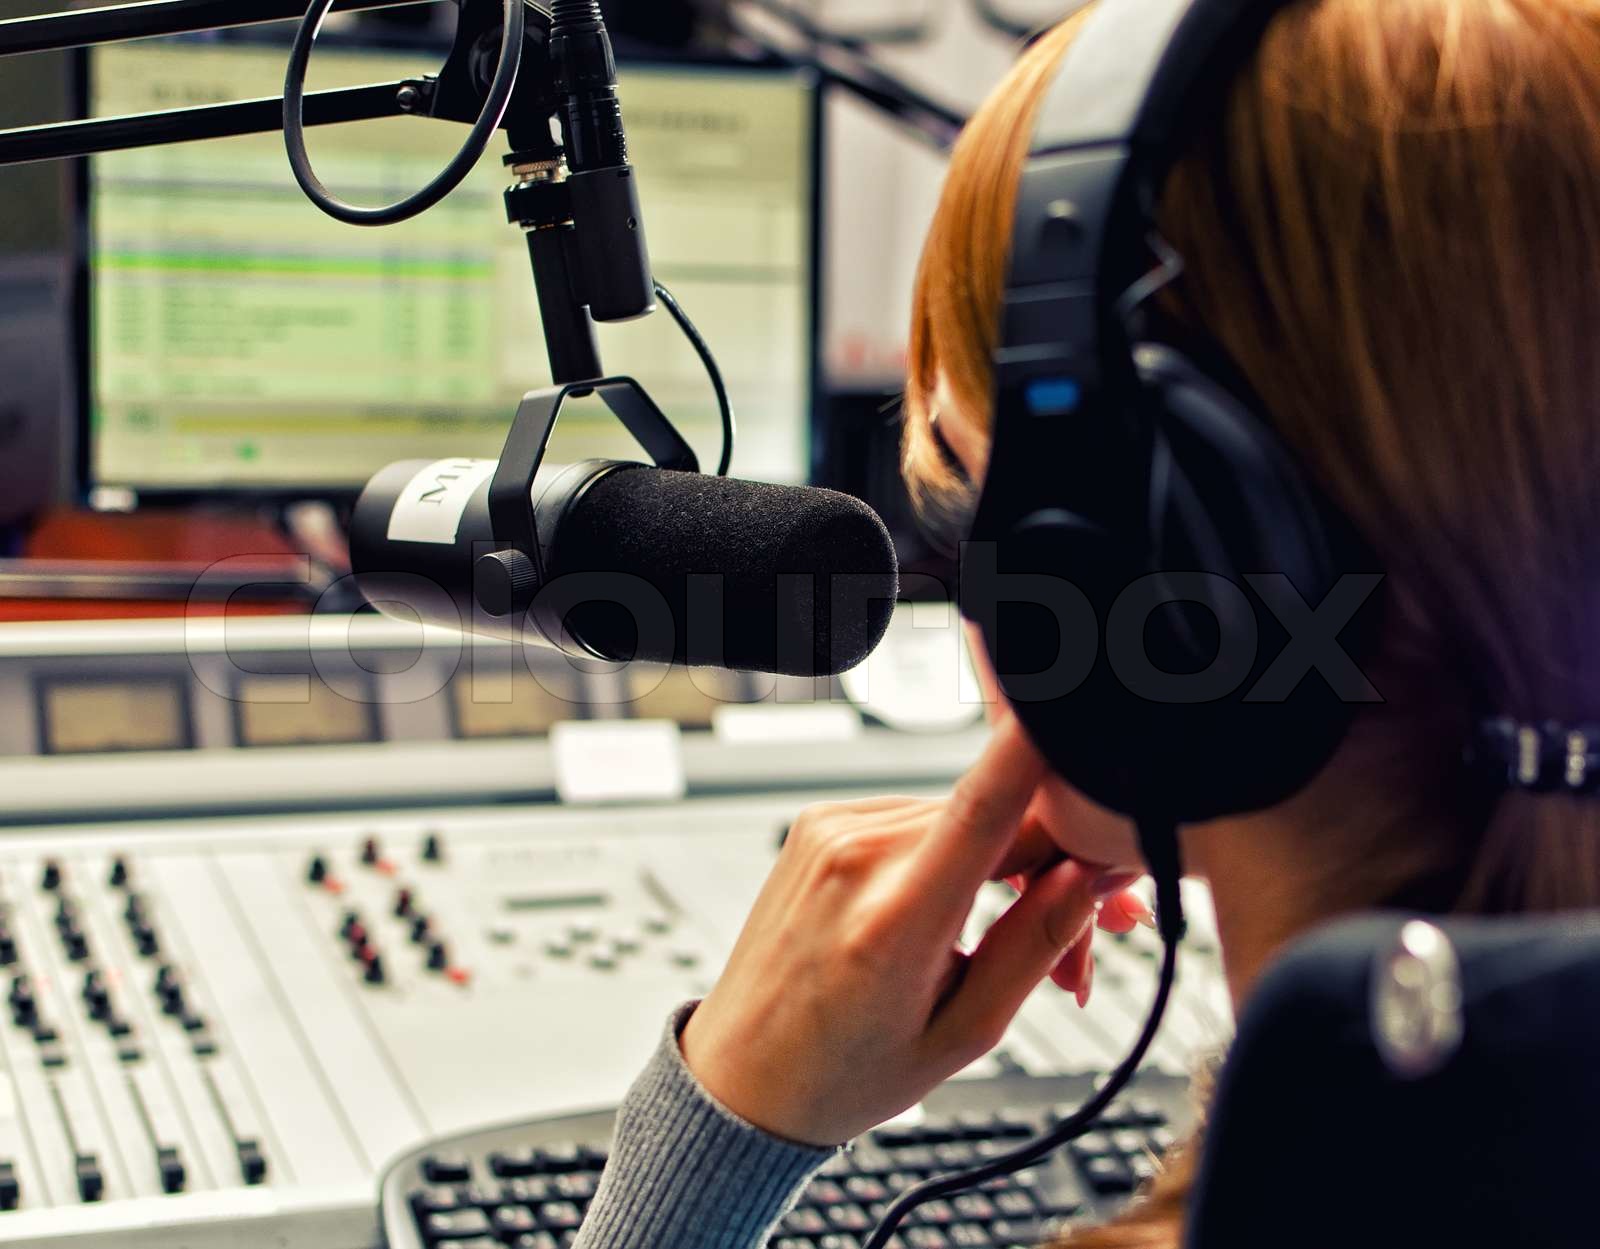 Danmarks Radio tilbyder et antal ph.d.-studerende fra Health at blive prøve-interviewet i et radiostudie af værter fra P3 eller P1. Foto: Colourbox.